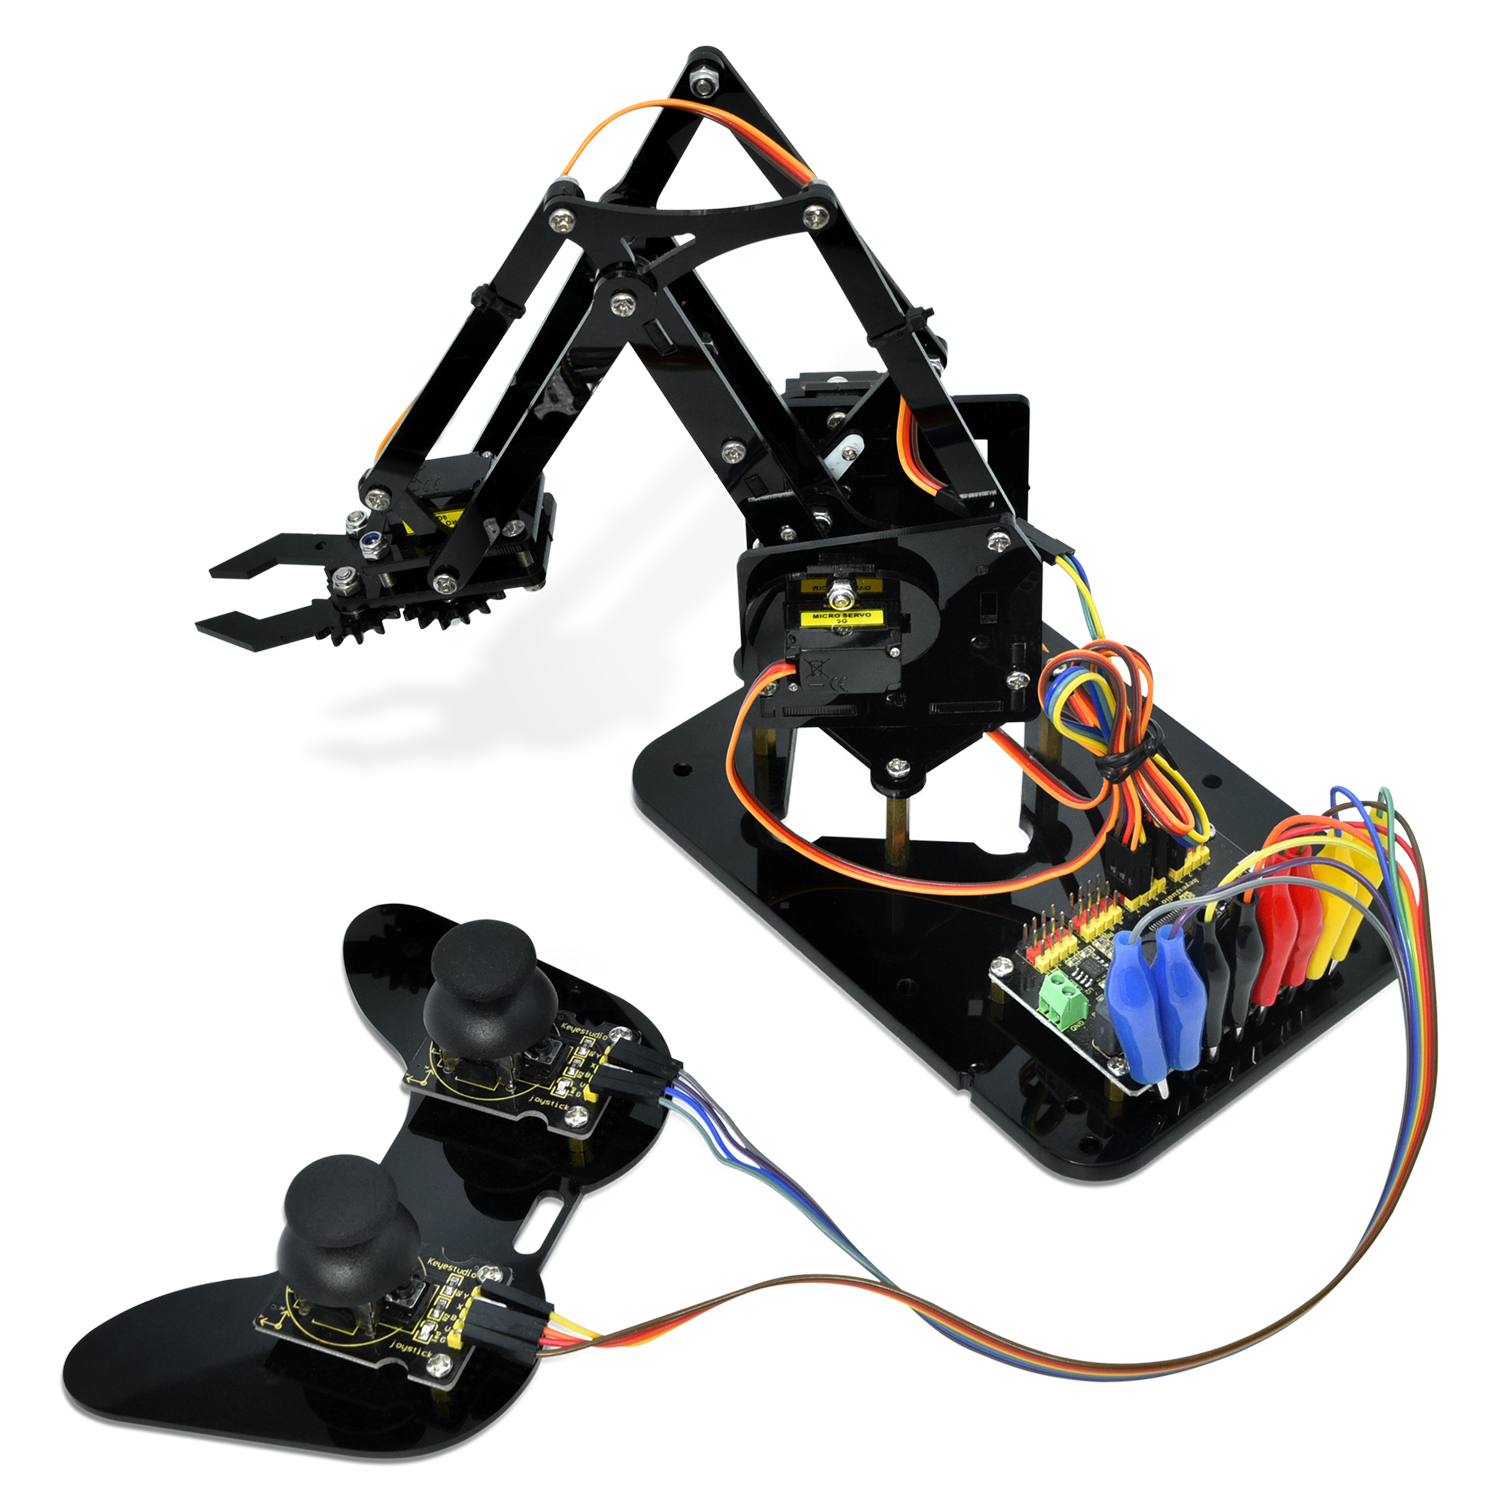 Keyestudio Robot Learning Kit Robot Arm Kit Robot STEM Programming